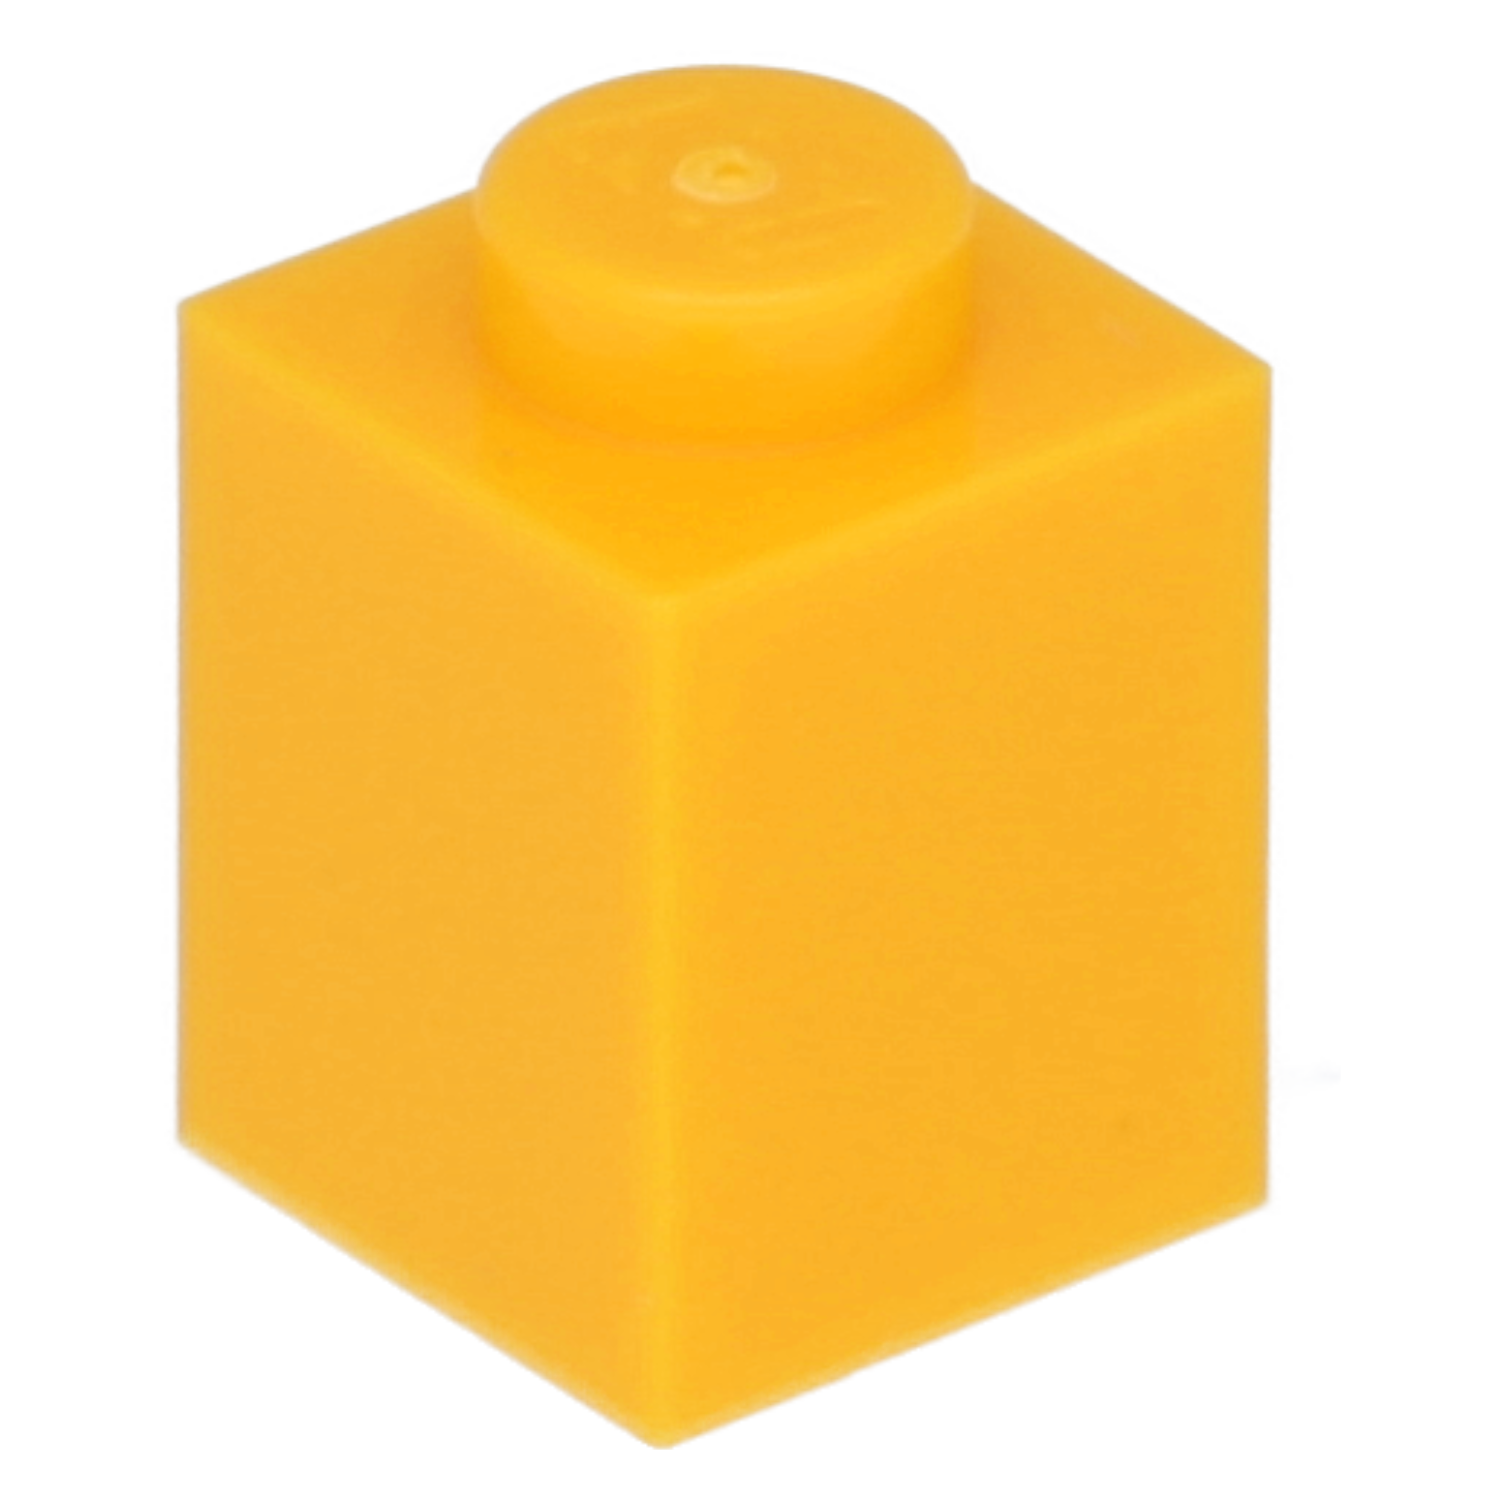 LEGO Steine (standard) - 1 x 1